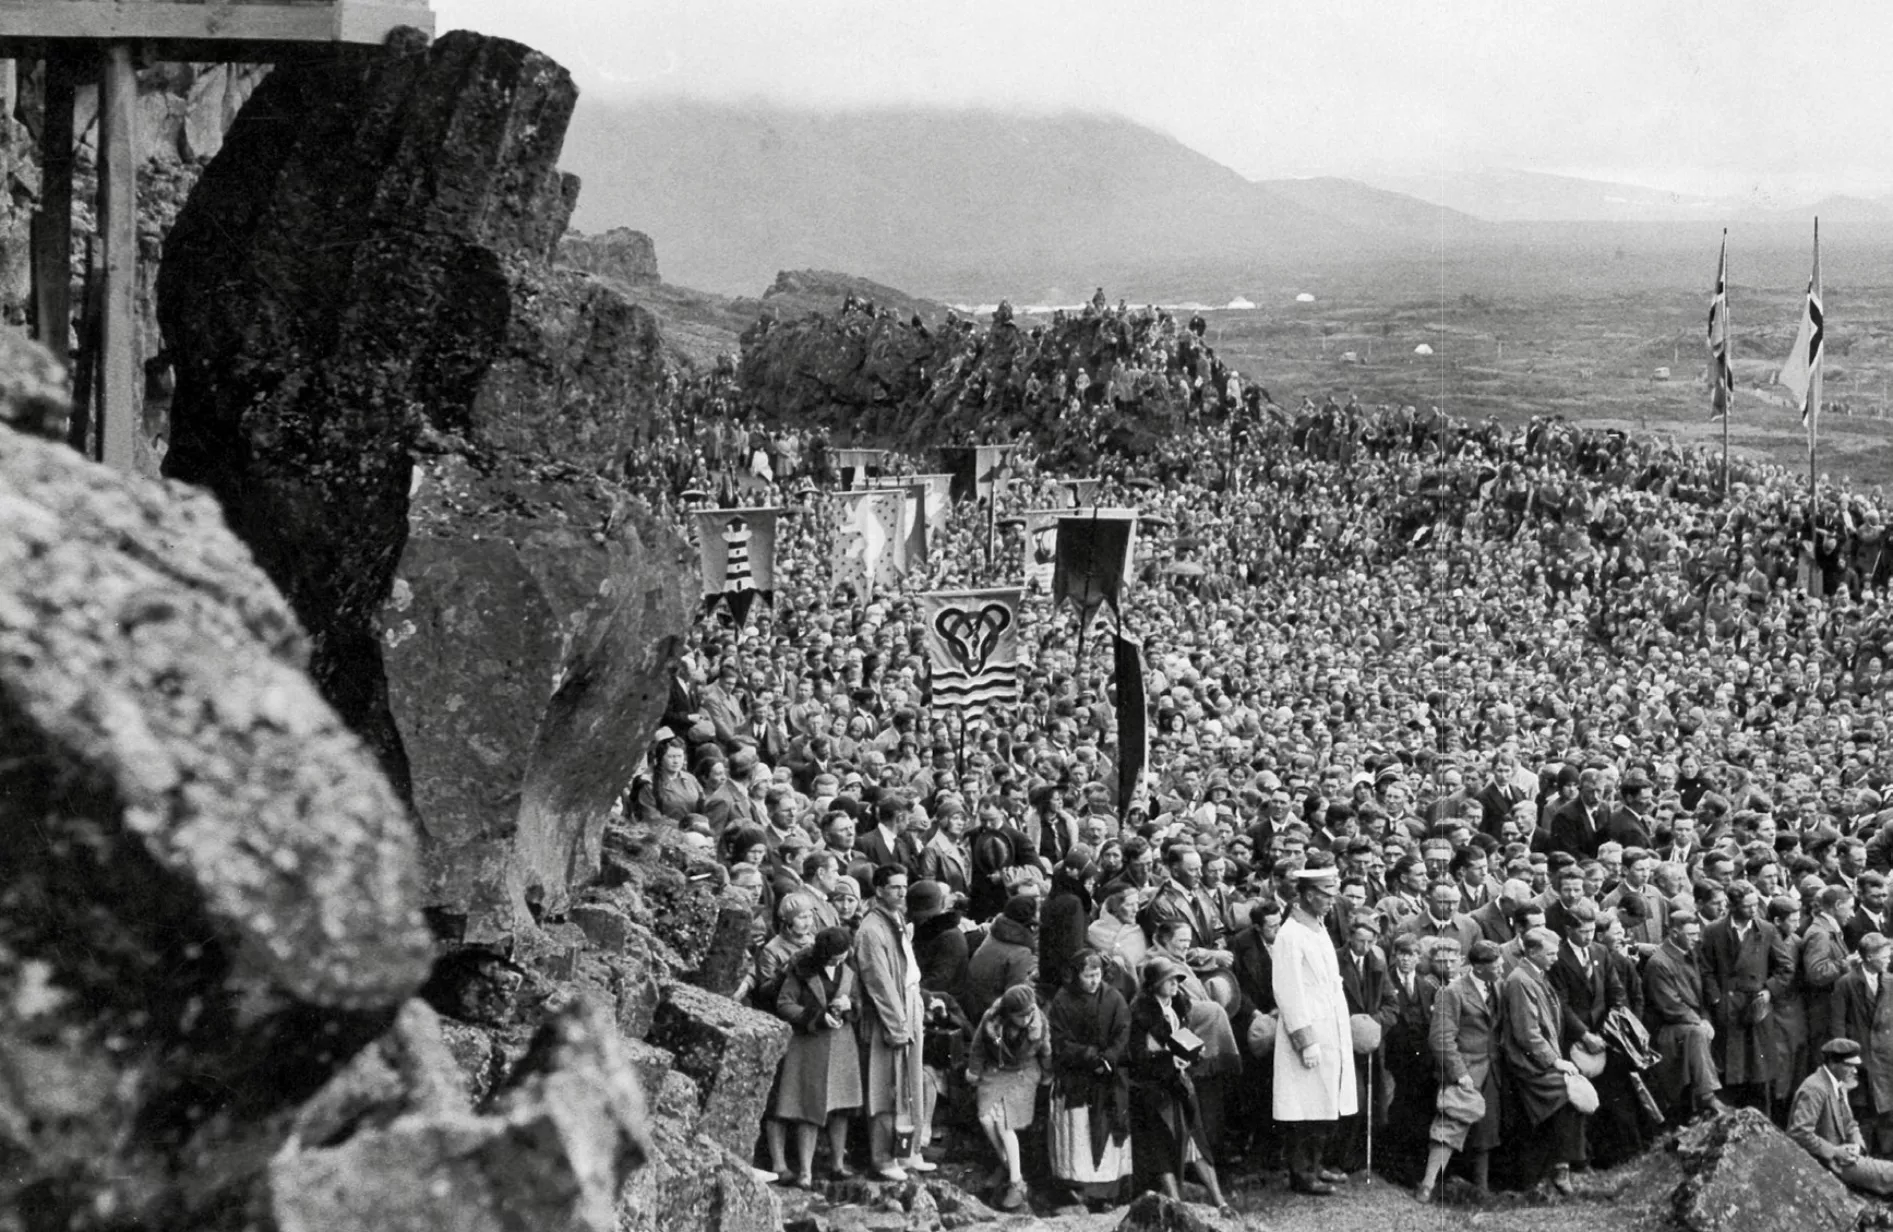 El 1930 els islandesos van fer aquesta cerimònia per commemorar el 1.000 aniversari de l’Alþingi